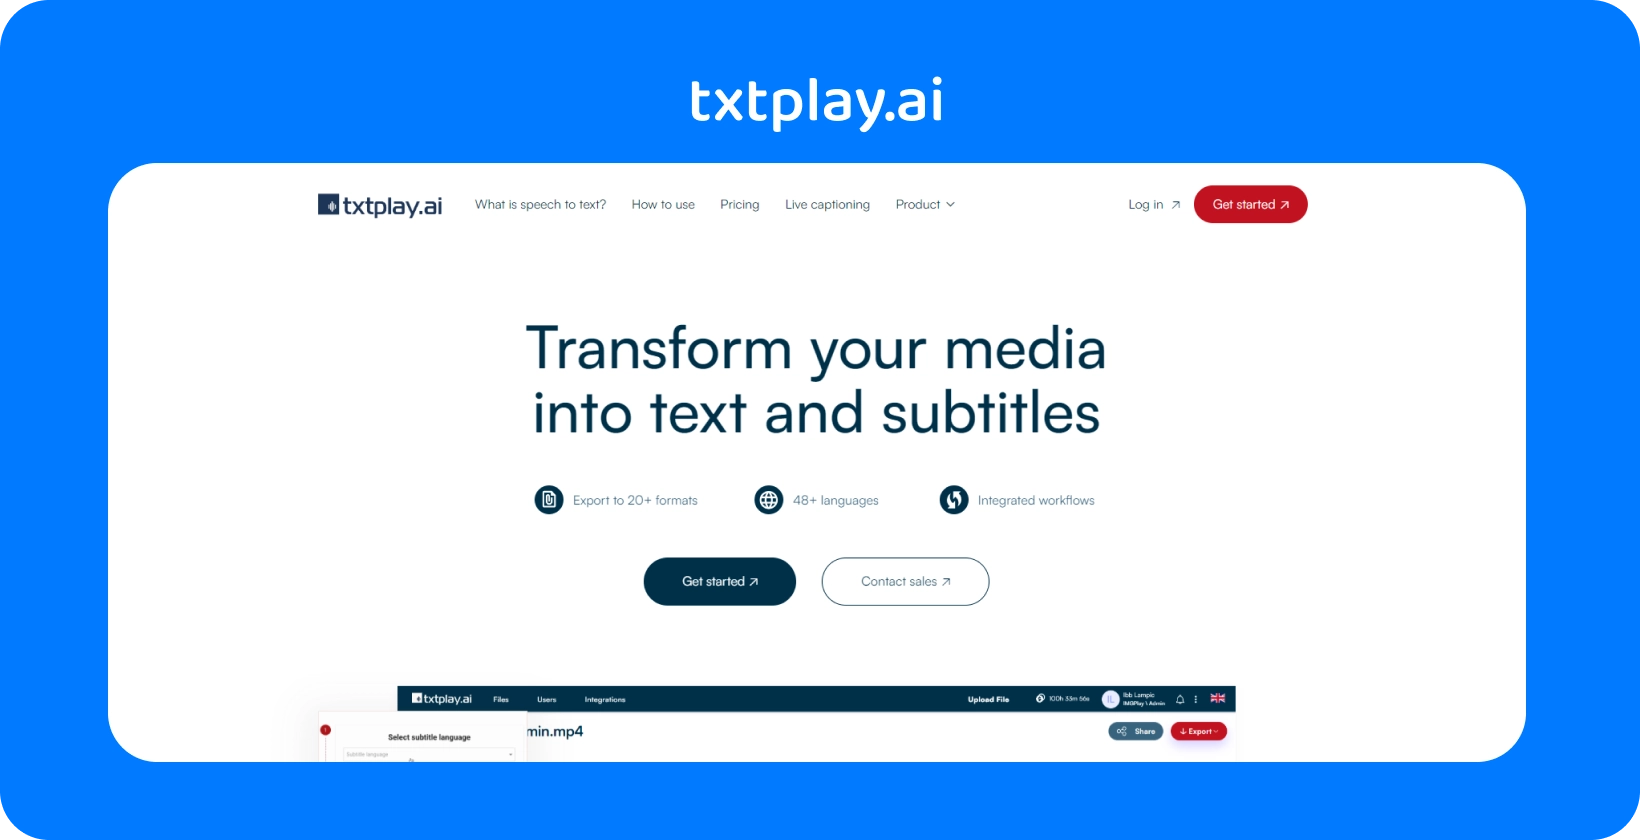 Zet de media om in tekst en ondertitels met txtplay.ai, met ondersteuning voor 48+ talen en 20+ formaten.